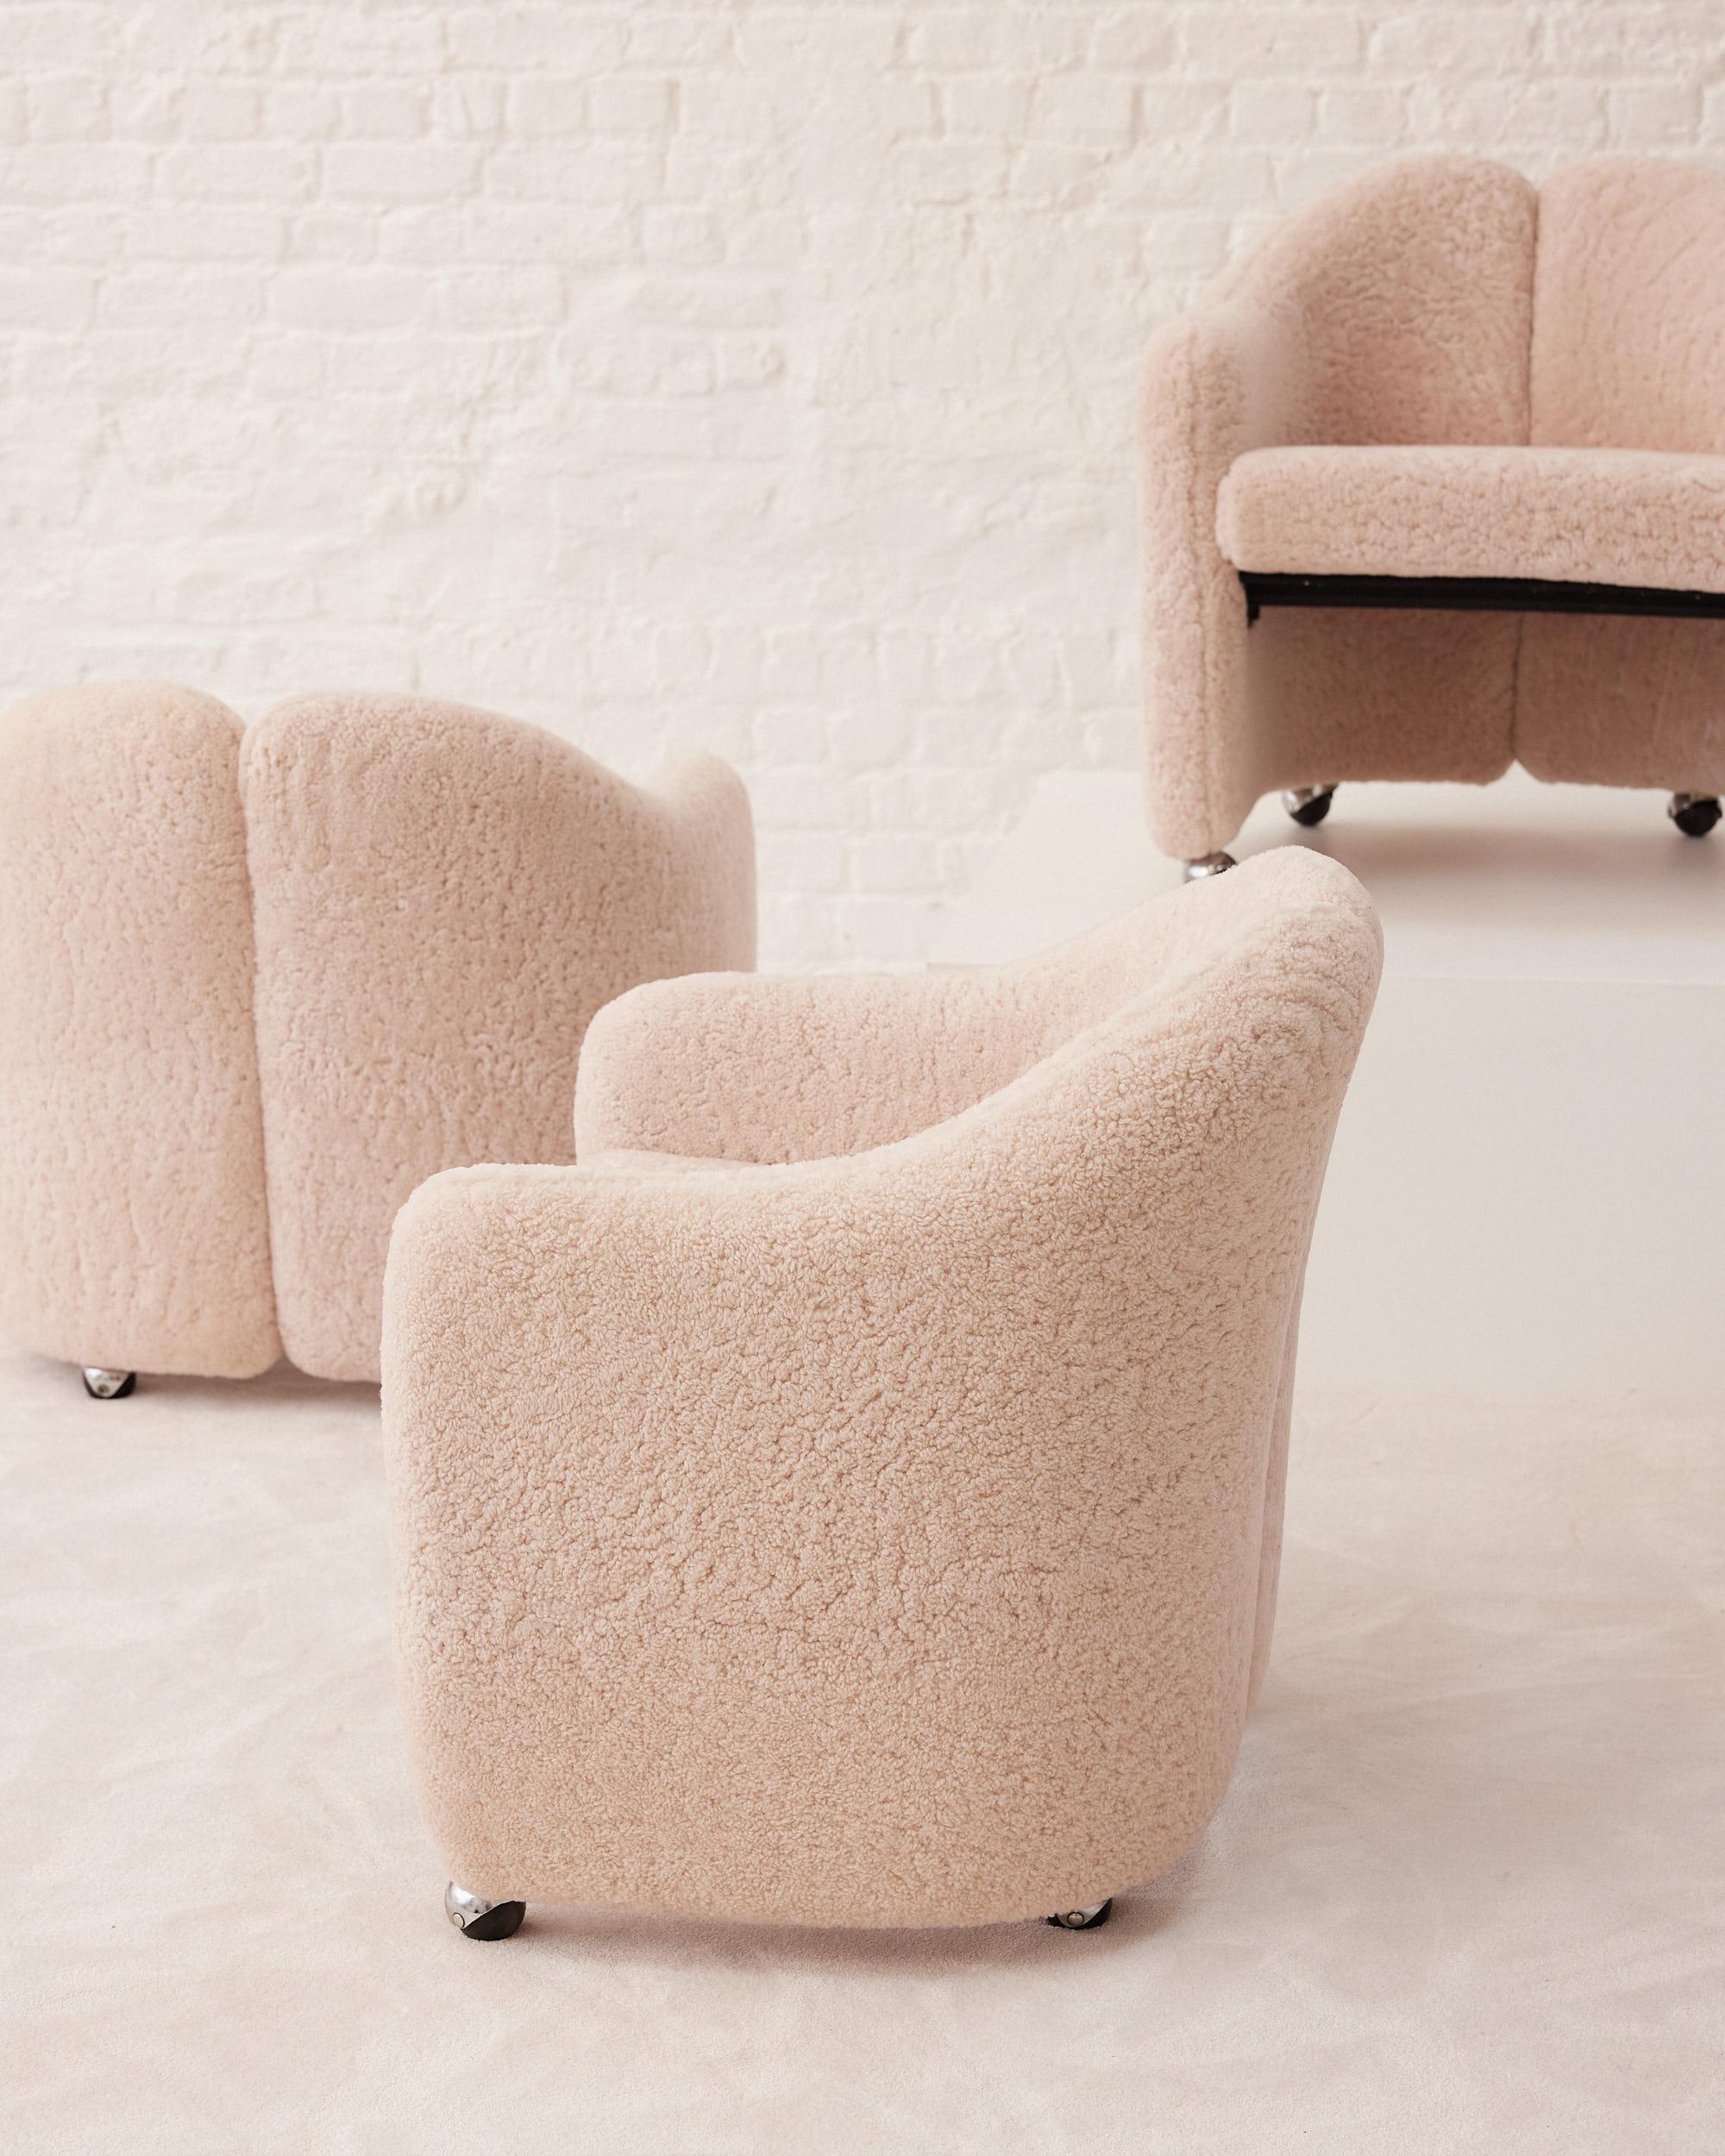 La chaise PS 142, véritable chef-d'œuvre du mobilier moderne du milieu du siècle. Conçu par le célèbre architecte et designer industriel italien Eugenio Gerli pour Tecno, ce fauteuil présente une silhouette épurée et minimaliste qui allie